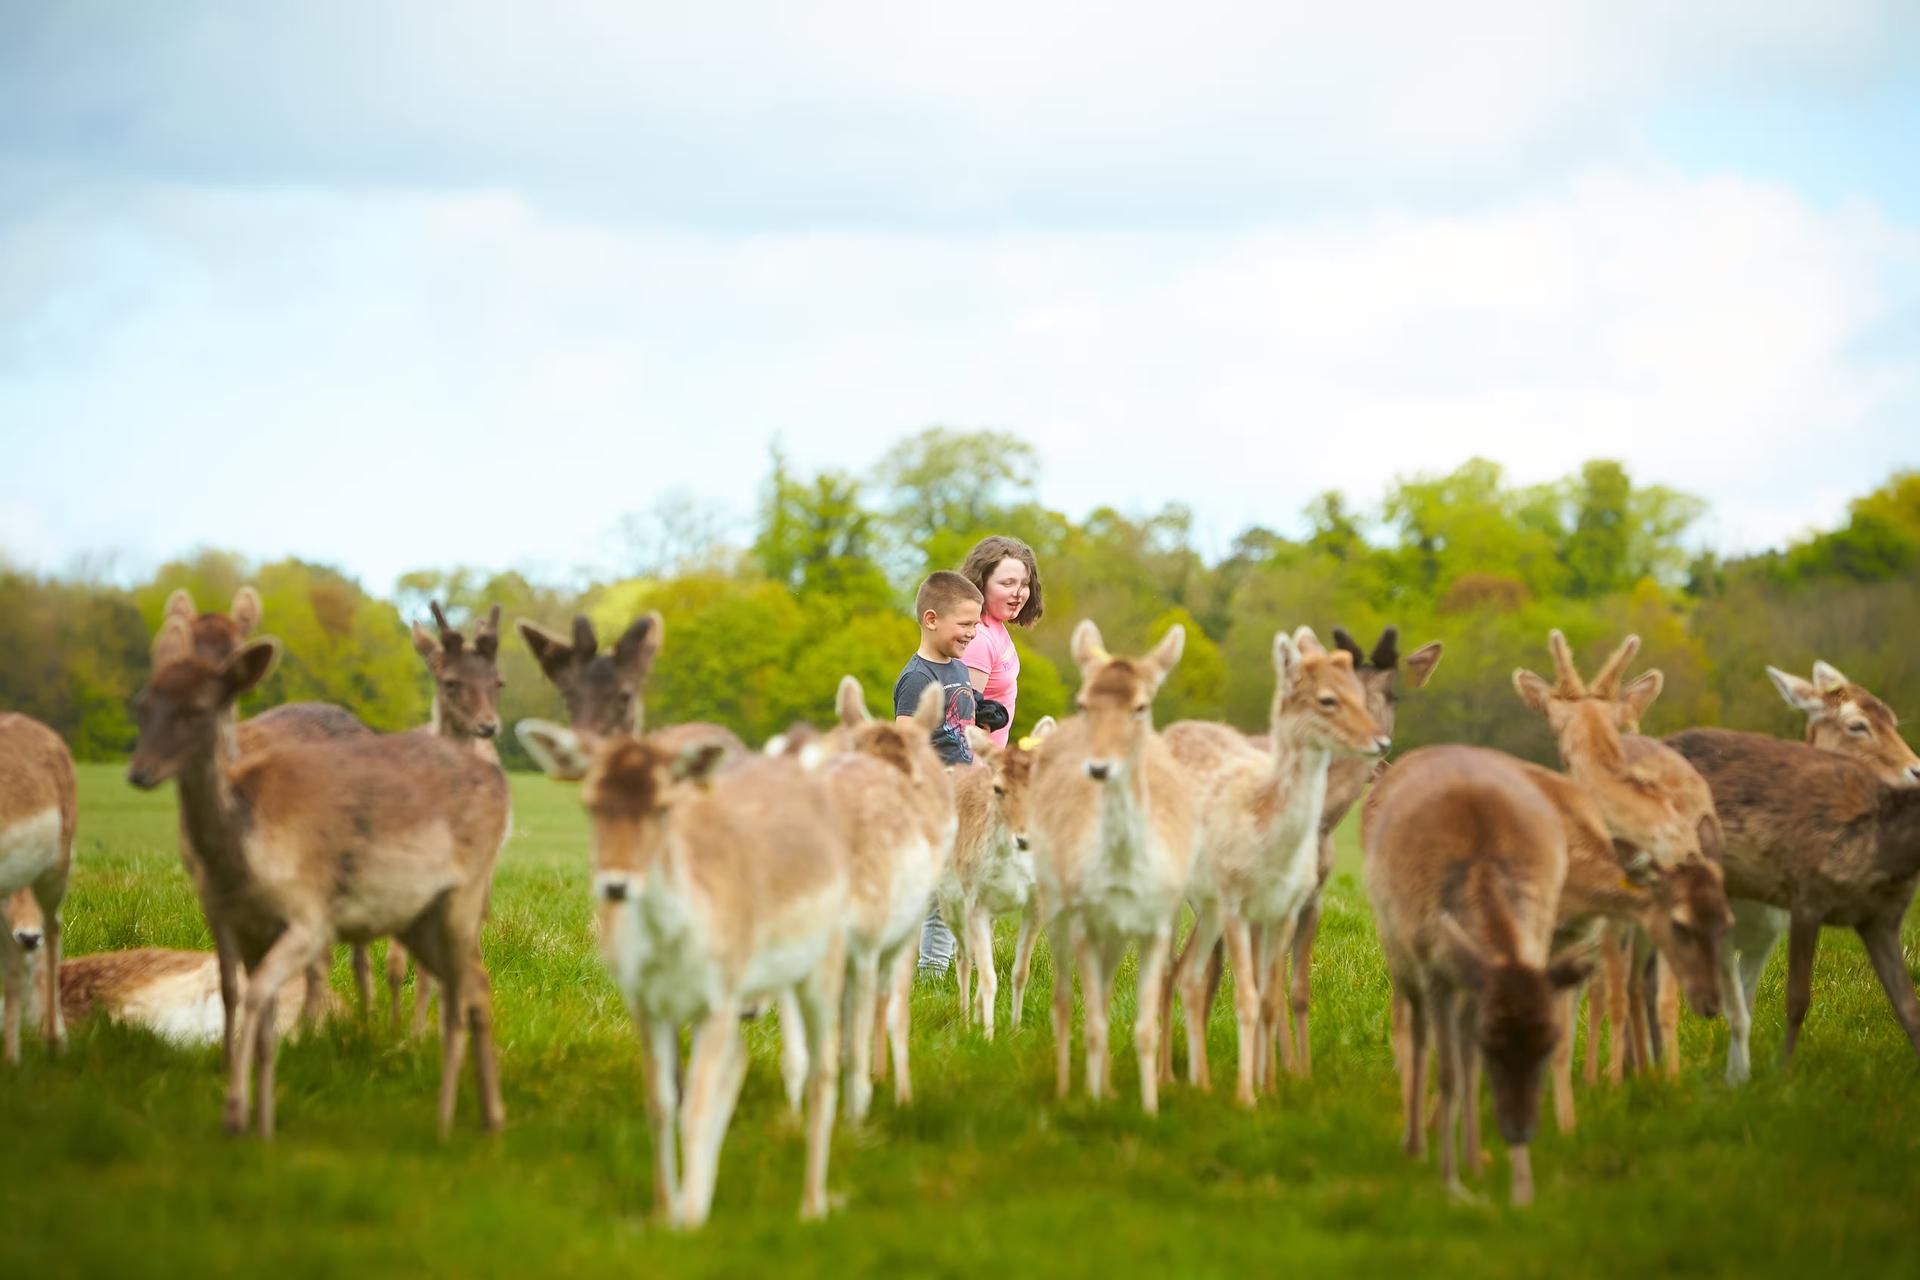 A boy and a girl wander through a group of wild deer, Phoenix Park, Dublin, Ireland